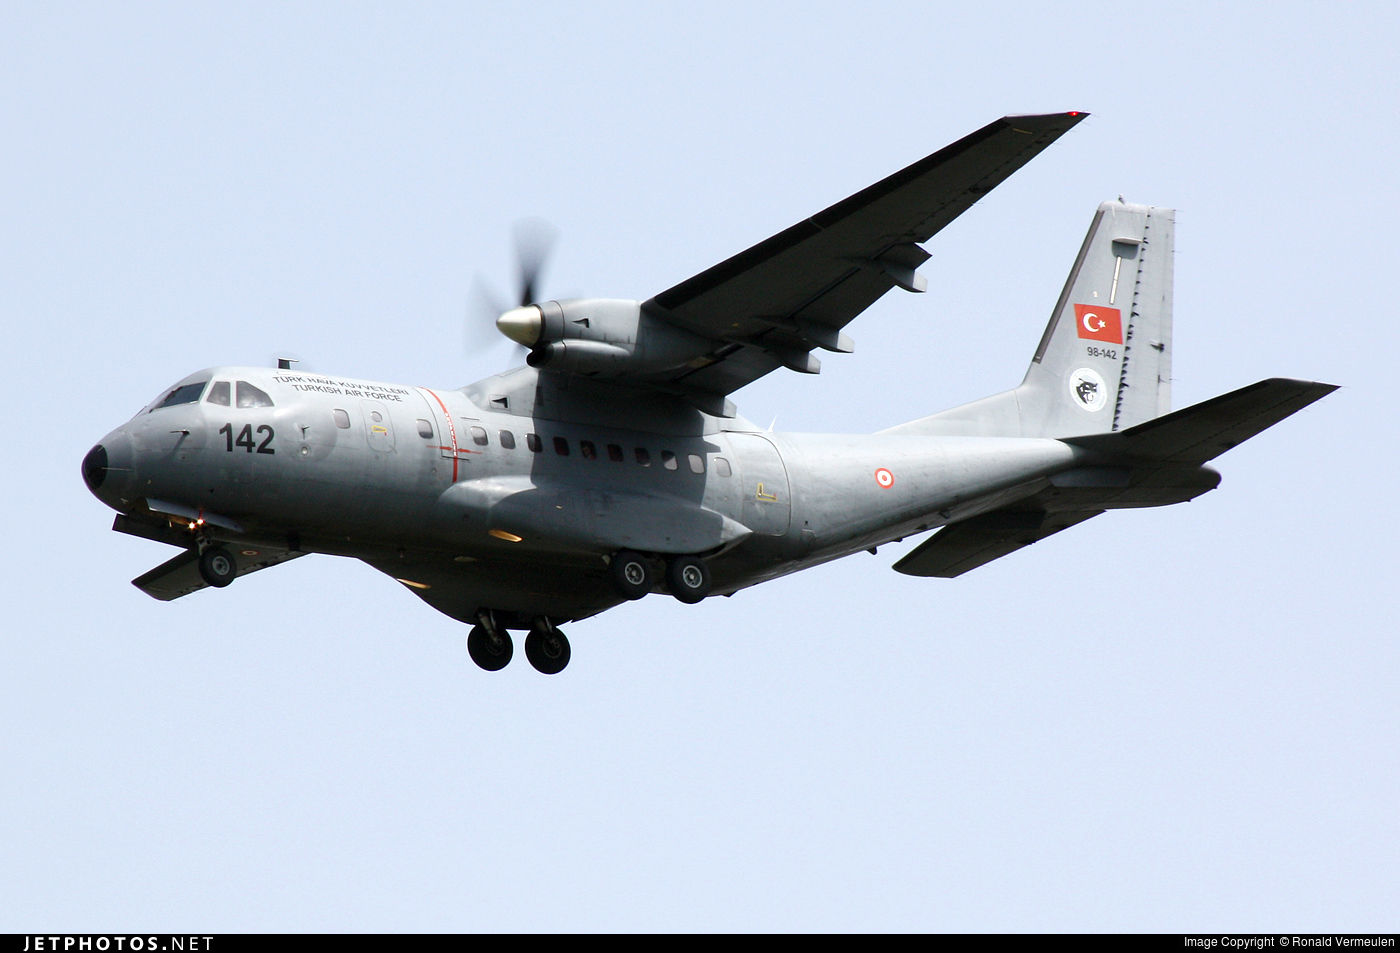 Δεκάδες παραβιάσεις του Εθνικού Εναέριου Χώρου από τουρκικά CN-235